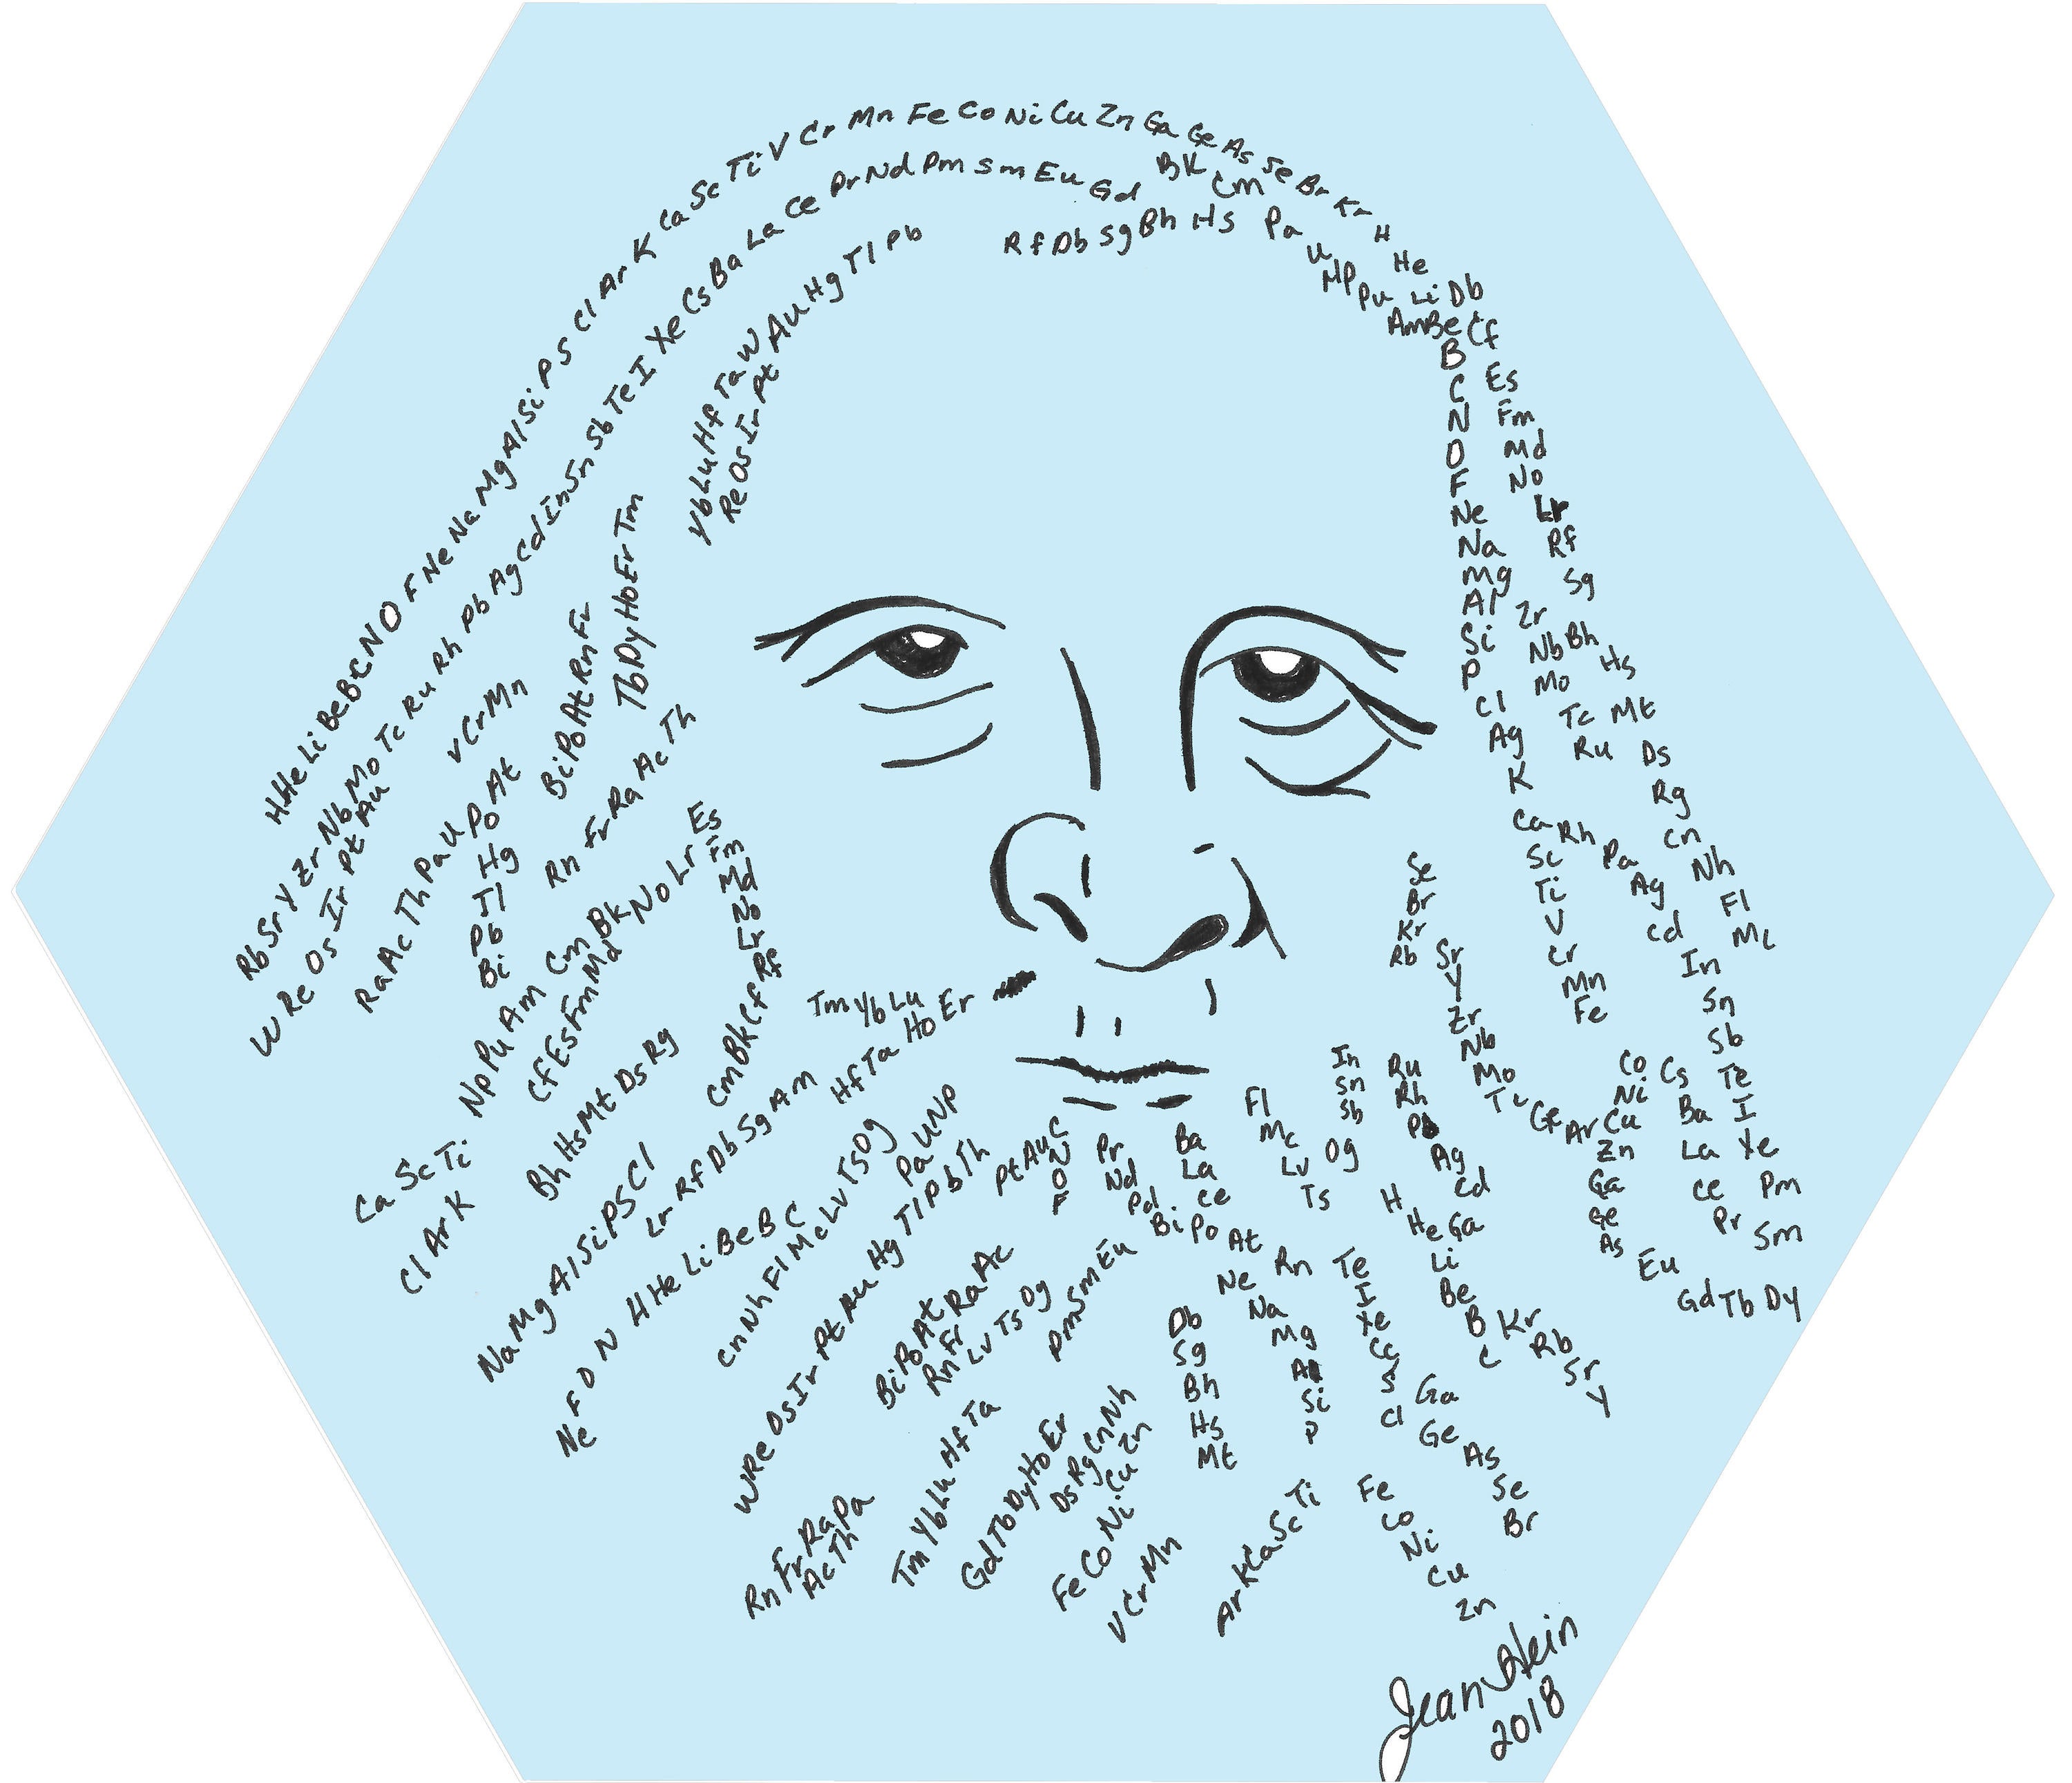 Mendeleev image outline with lines made up of elemental symbols